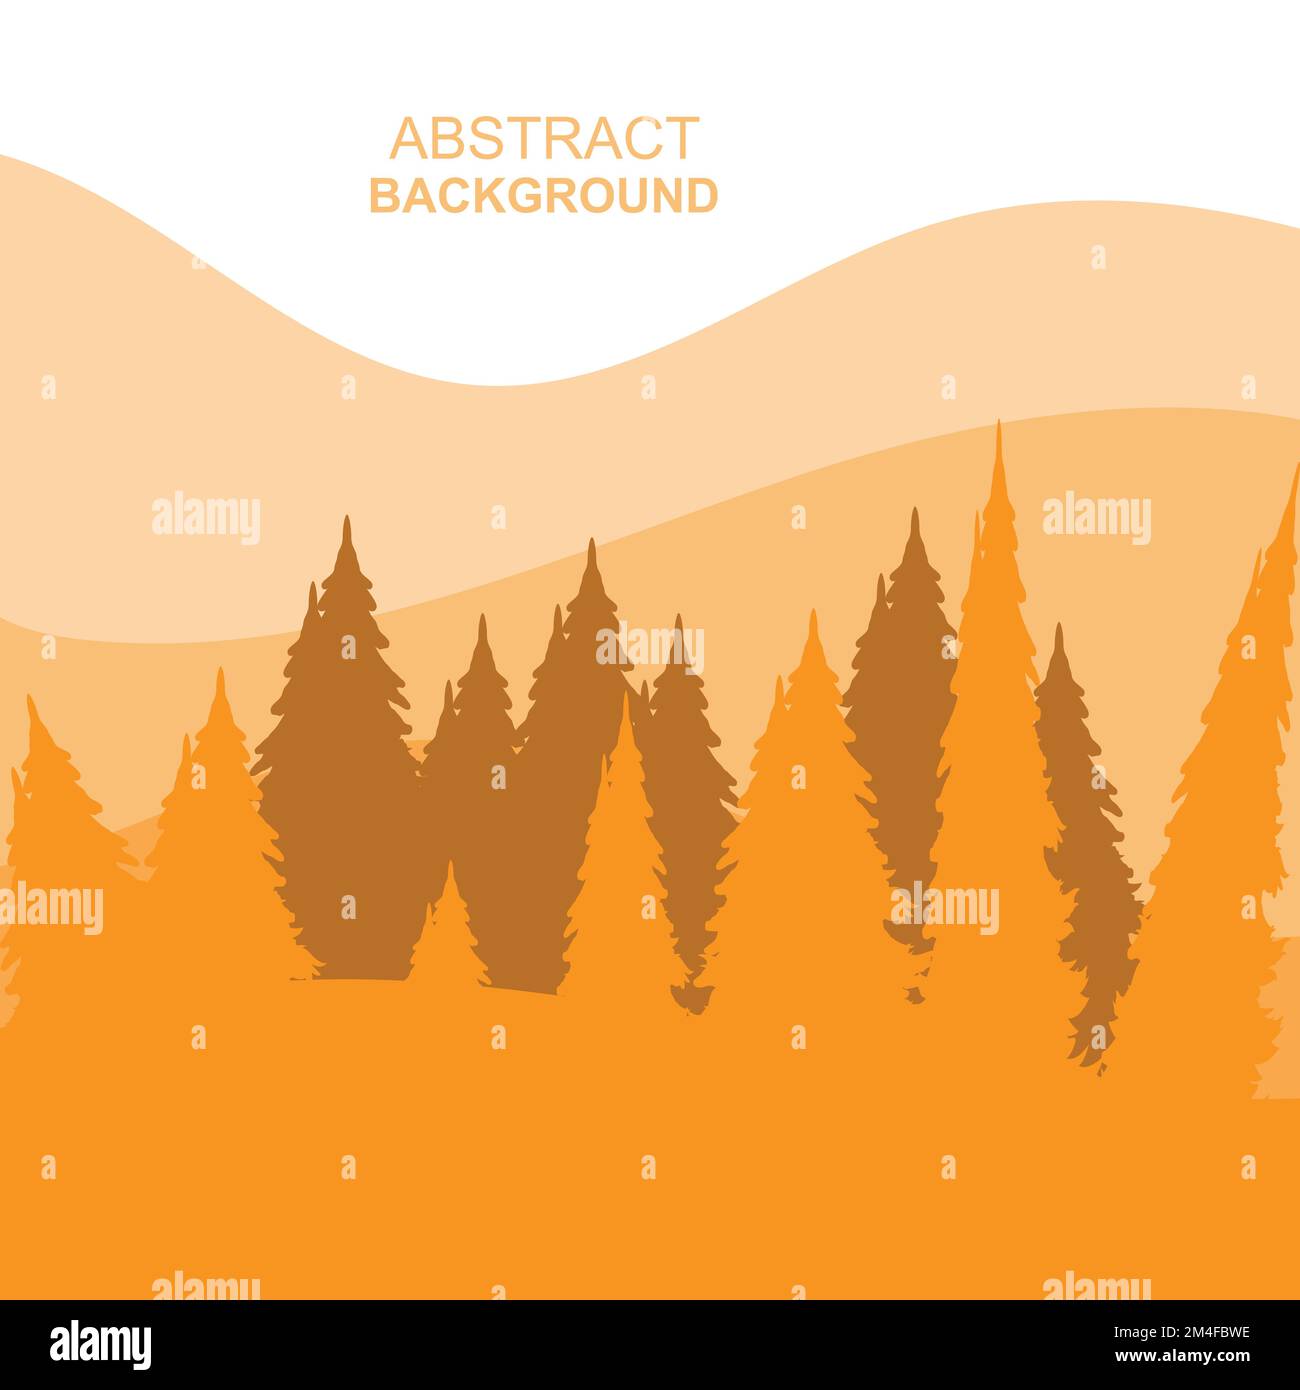 Astratto Forest Mountains Vector Illustration background Design Illustrazione Vettoriale